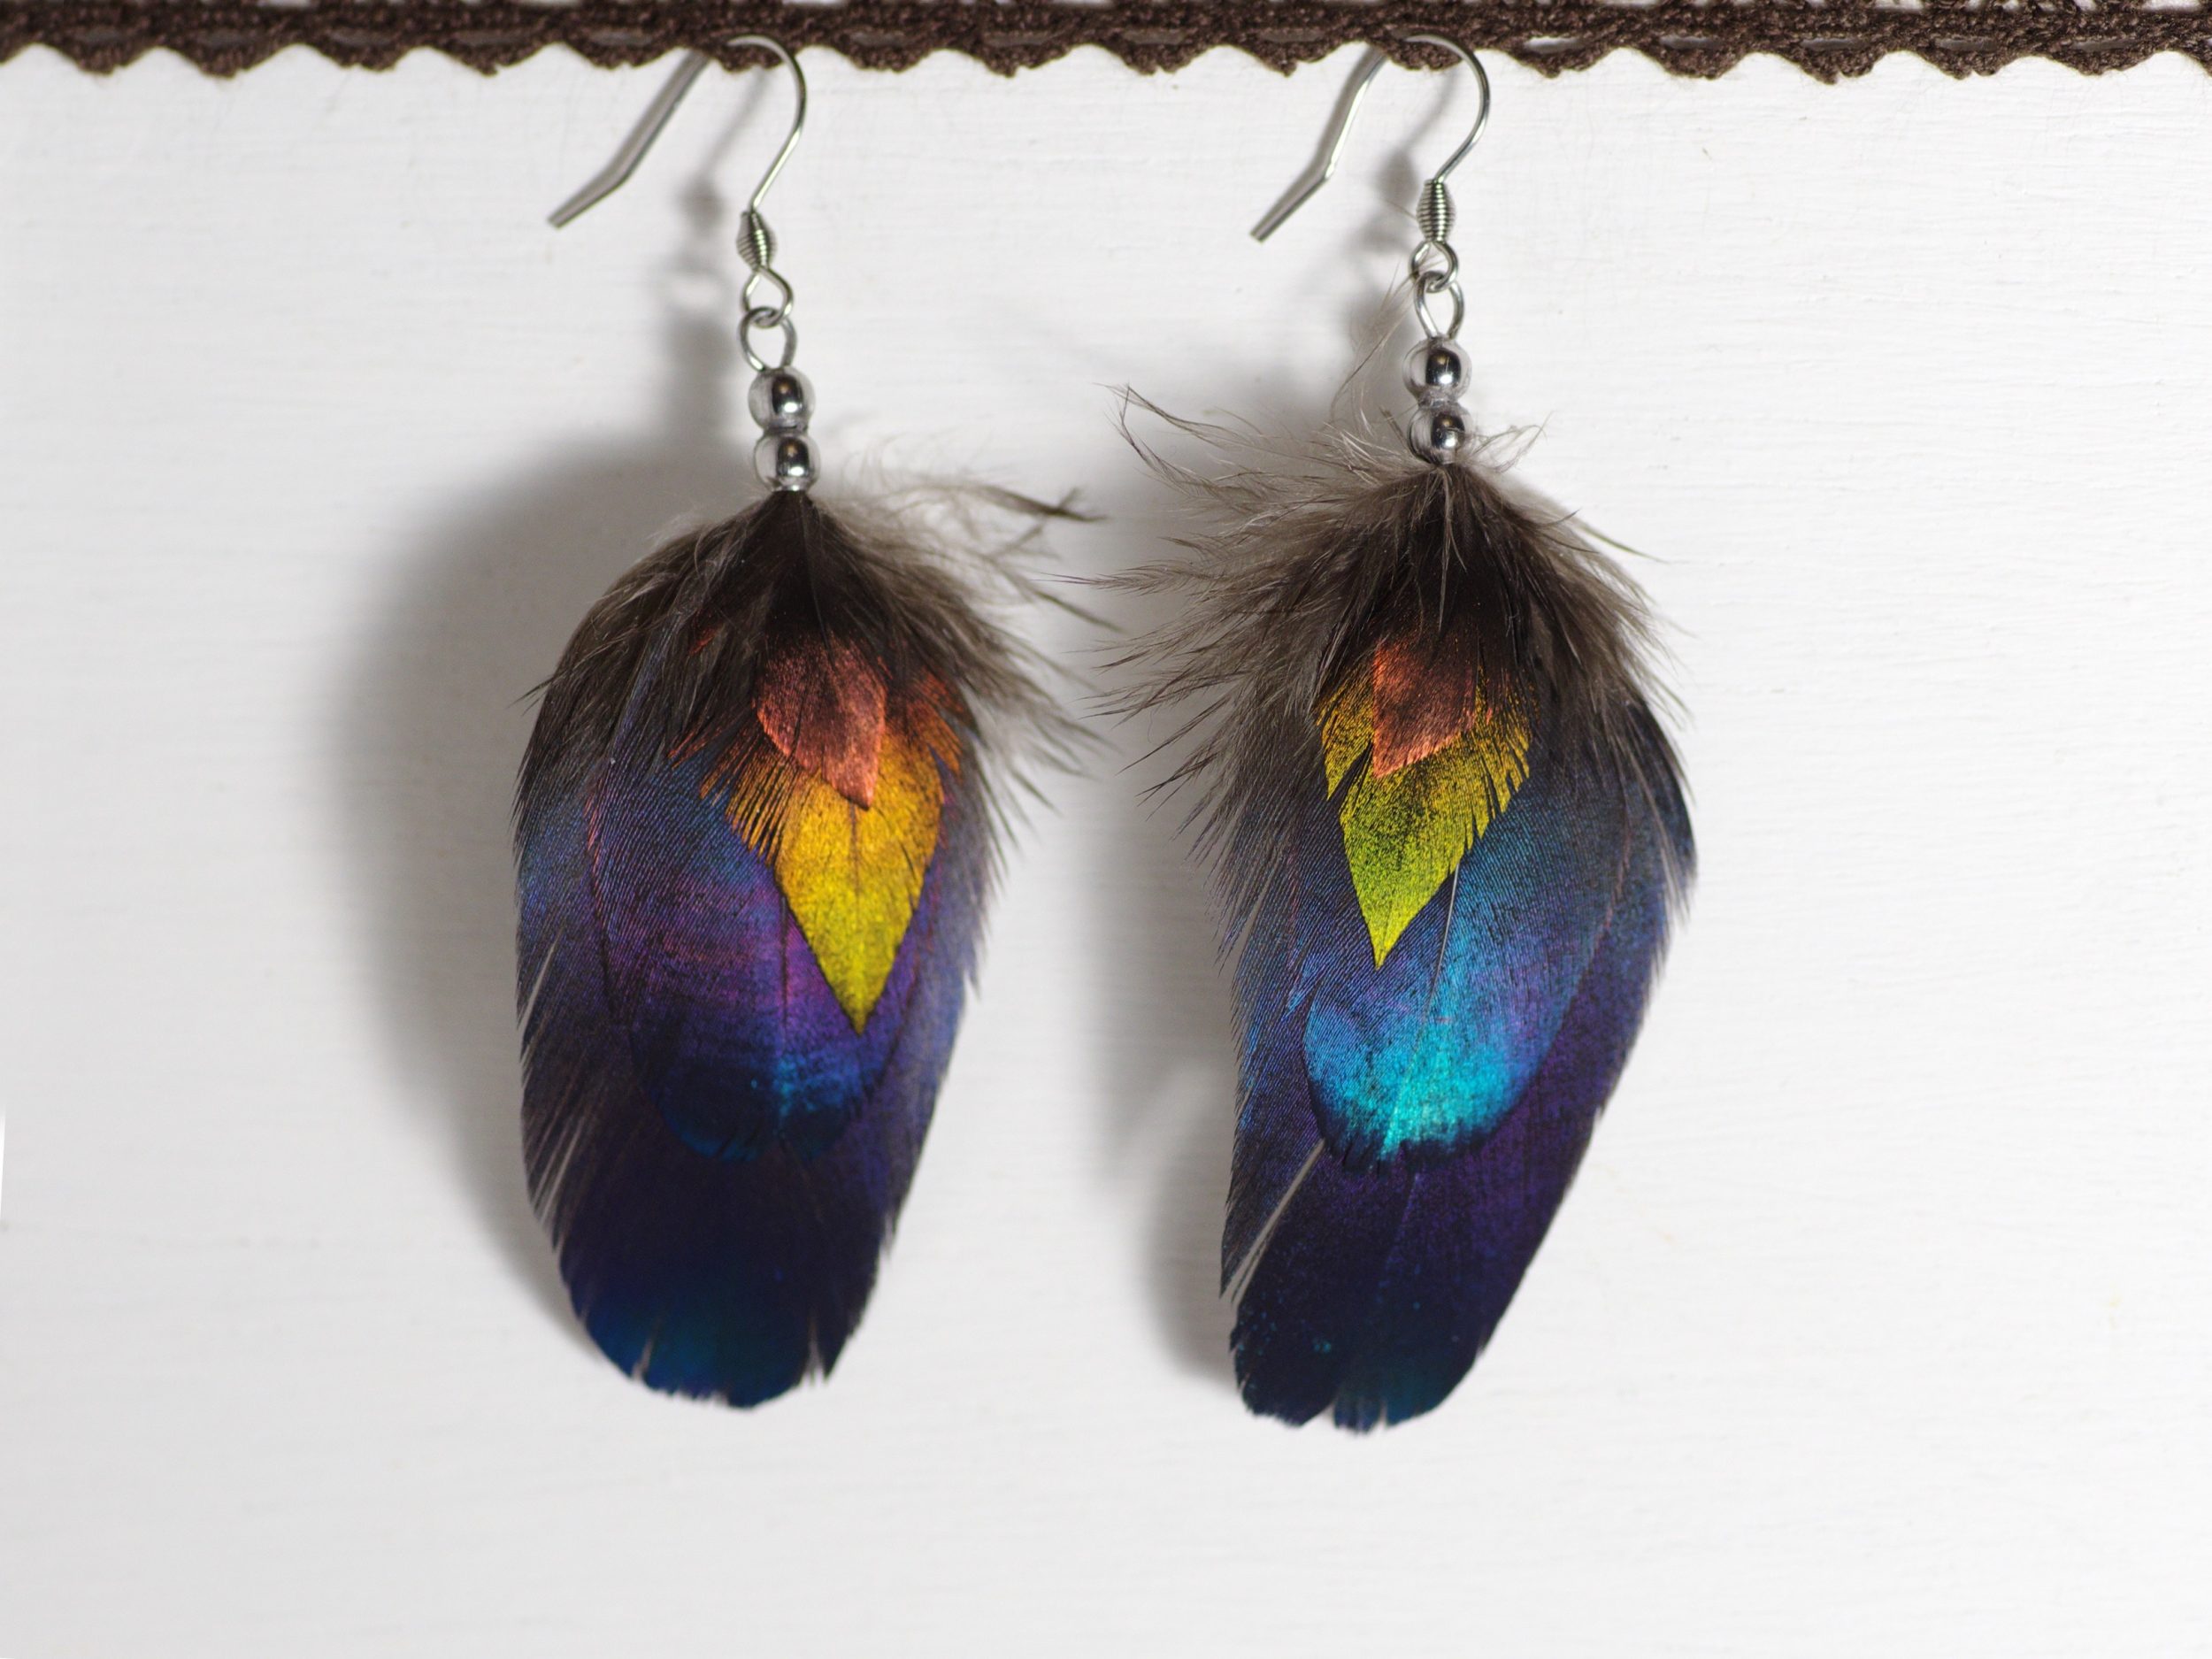 boucles d'oreilles plumes multicolores et brillantes : 4 plumes superposées par ordre de taille : pette plume triangulaire cuivrée, plume triangulaire verte, deux plumes ovales bleues avec des reflets turquoise